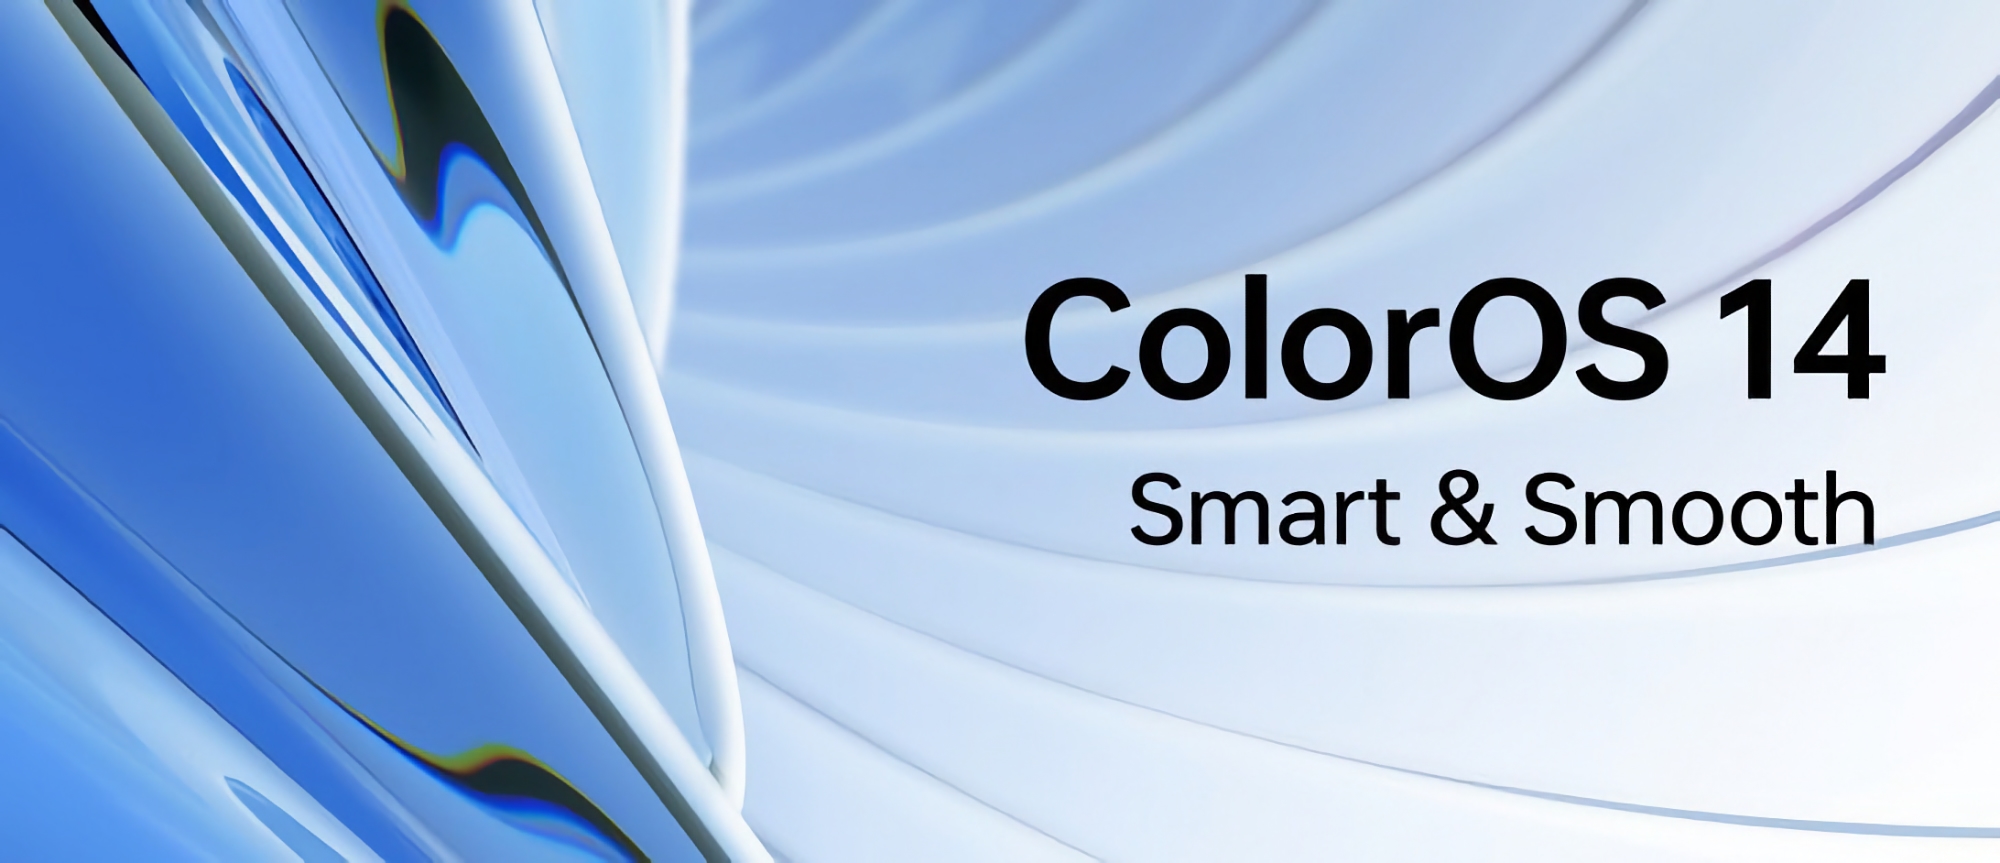 Cuándo y qué dispositivos OPPO recibirán ColorOS 14 en el mercado global